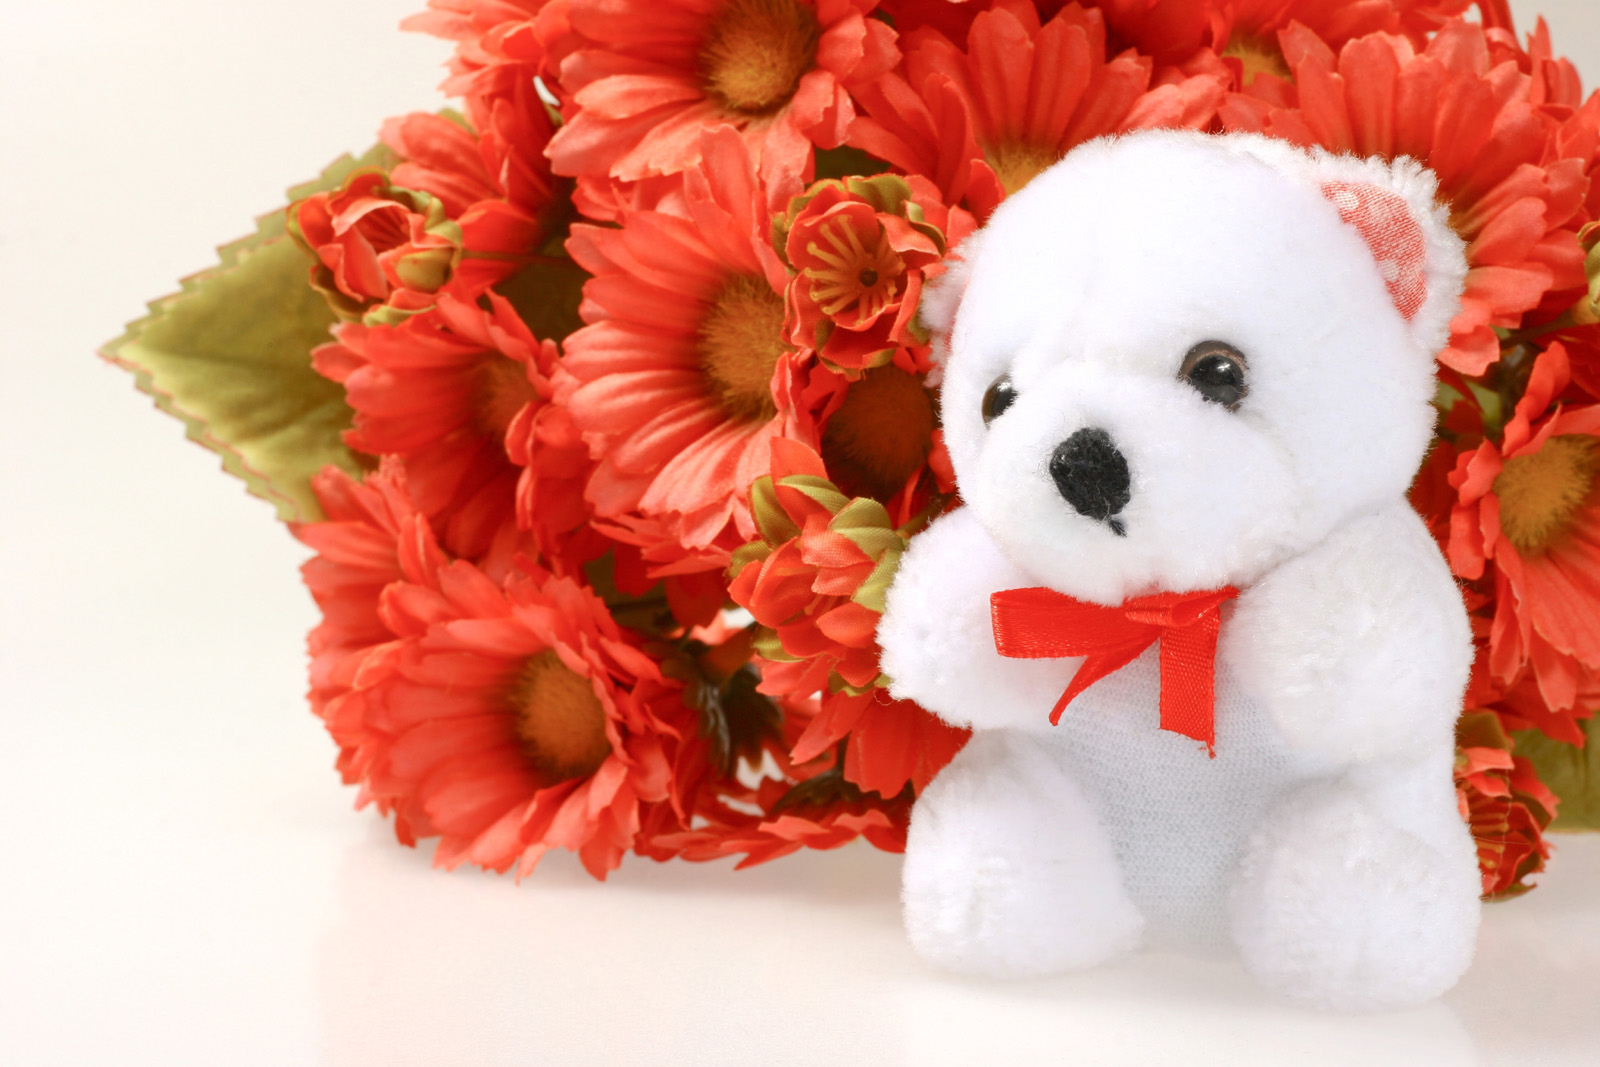 Cute White Teddy Bear - Teddy Bears With Flowers - HD Wallpaper 